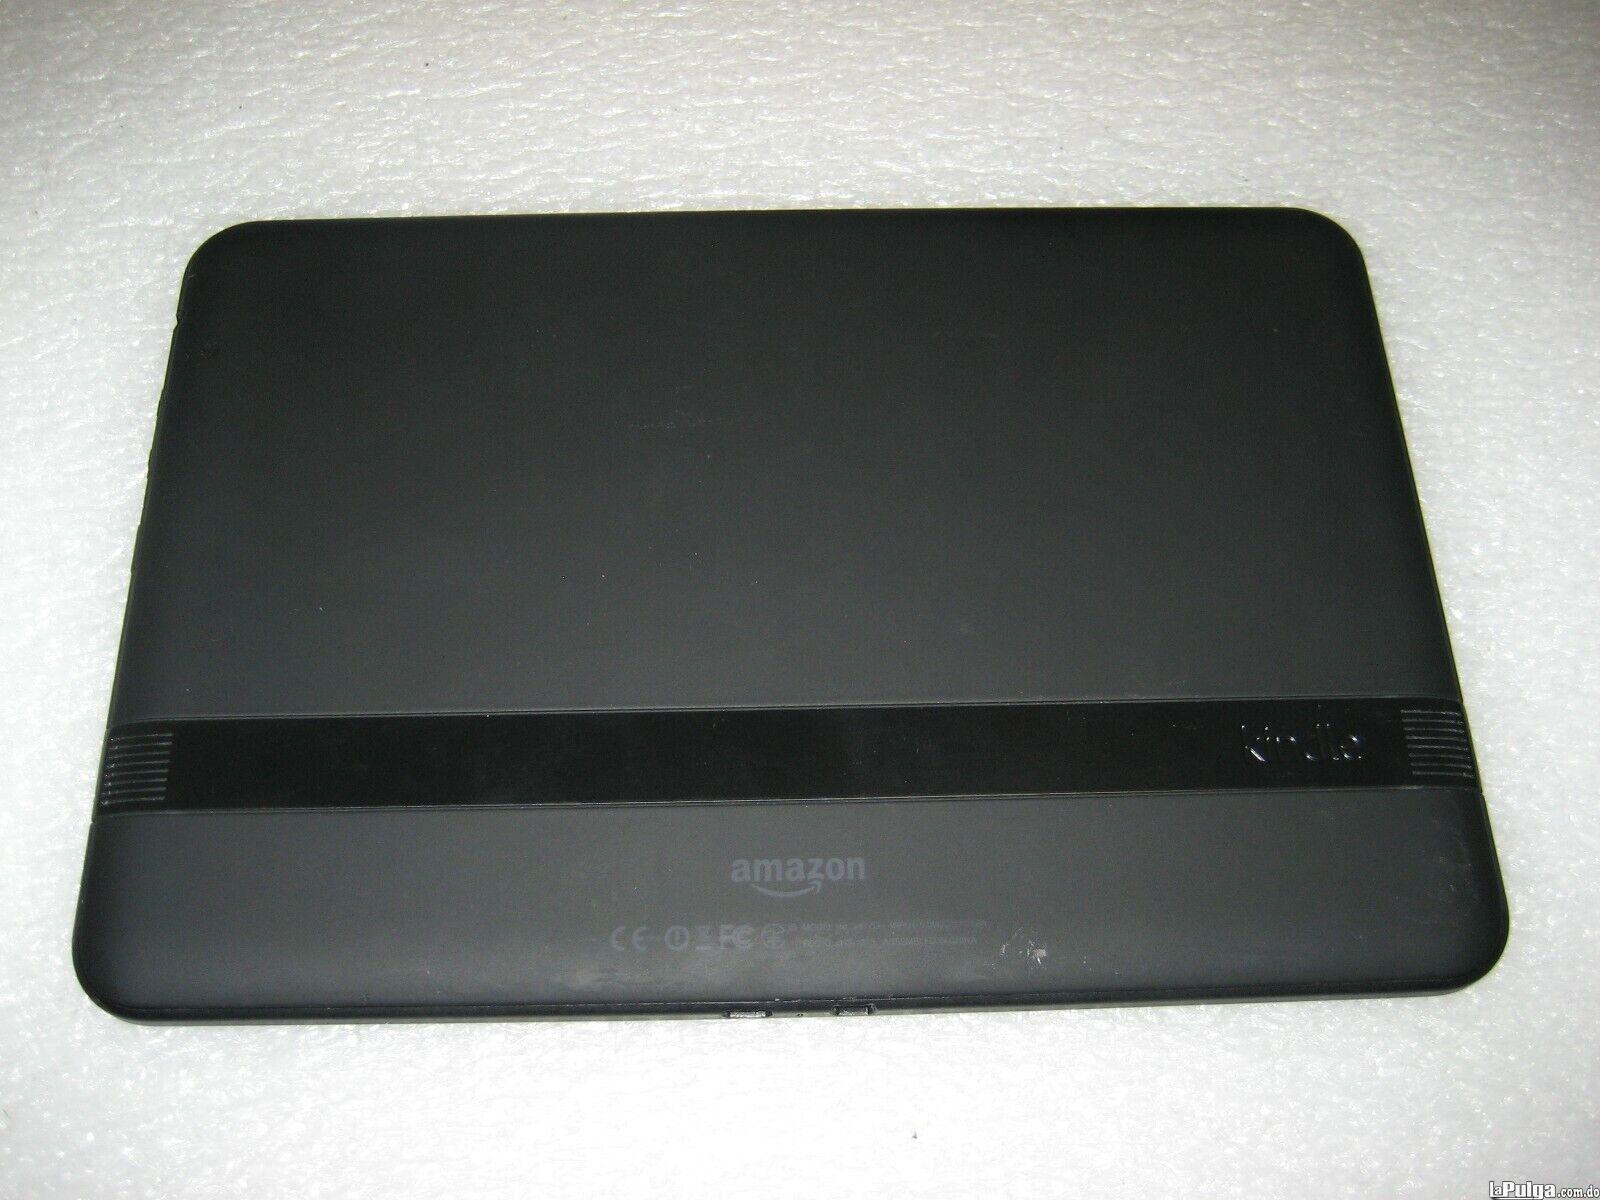  Amazon Kindle Fire HD 7 2 Generación 8GB Wi-Fi 7in - Negro  Foto 7136792-5.jpg